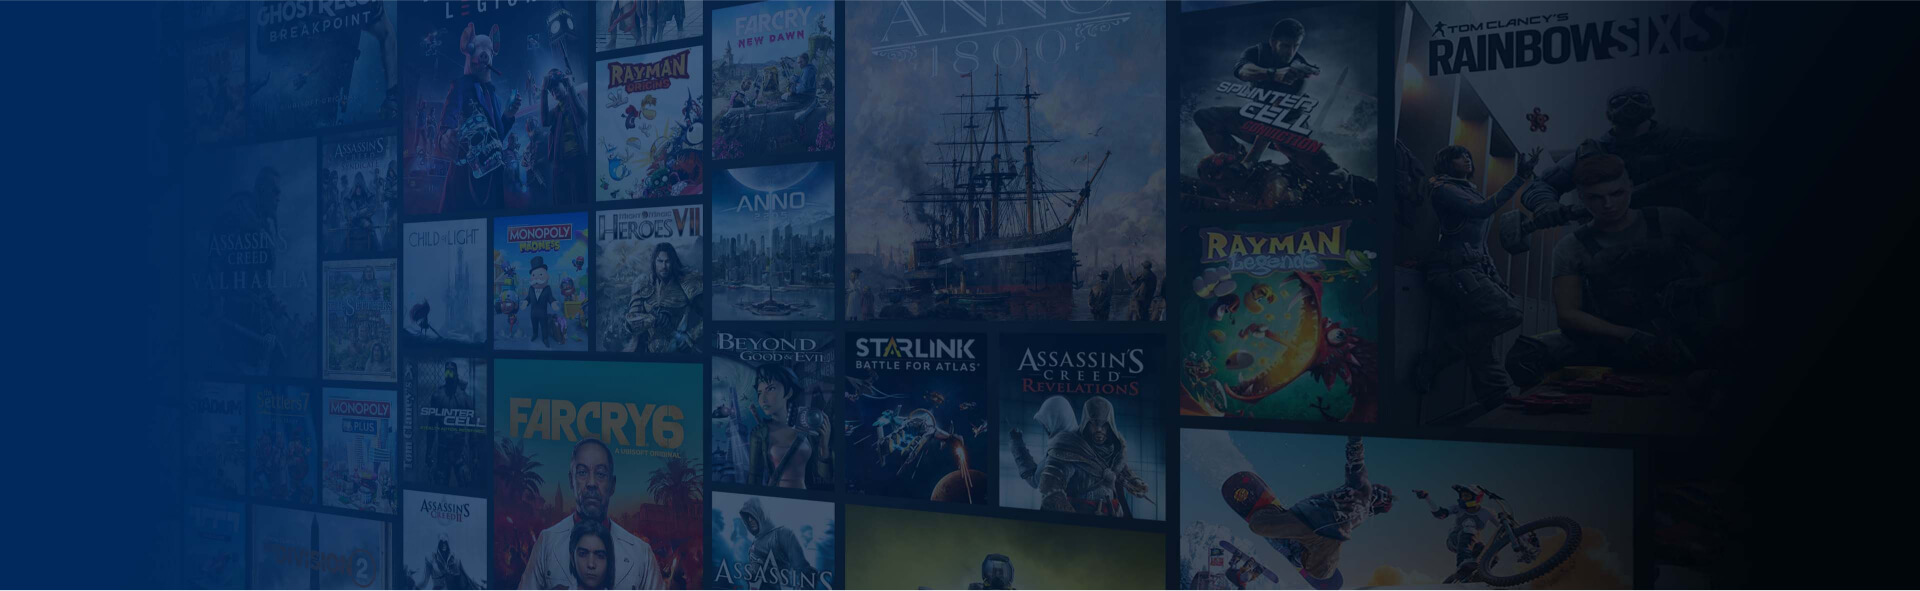 Mosaic représentant la bibliothèque des jeux disponibles dans l'abonnement Ubisoft+